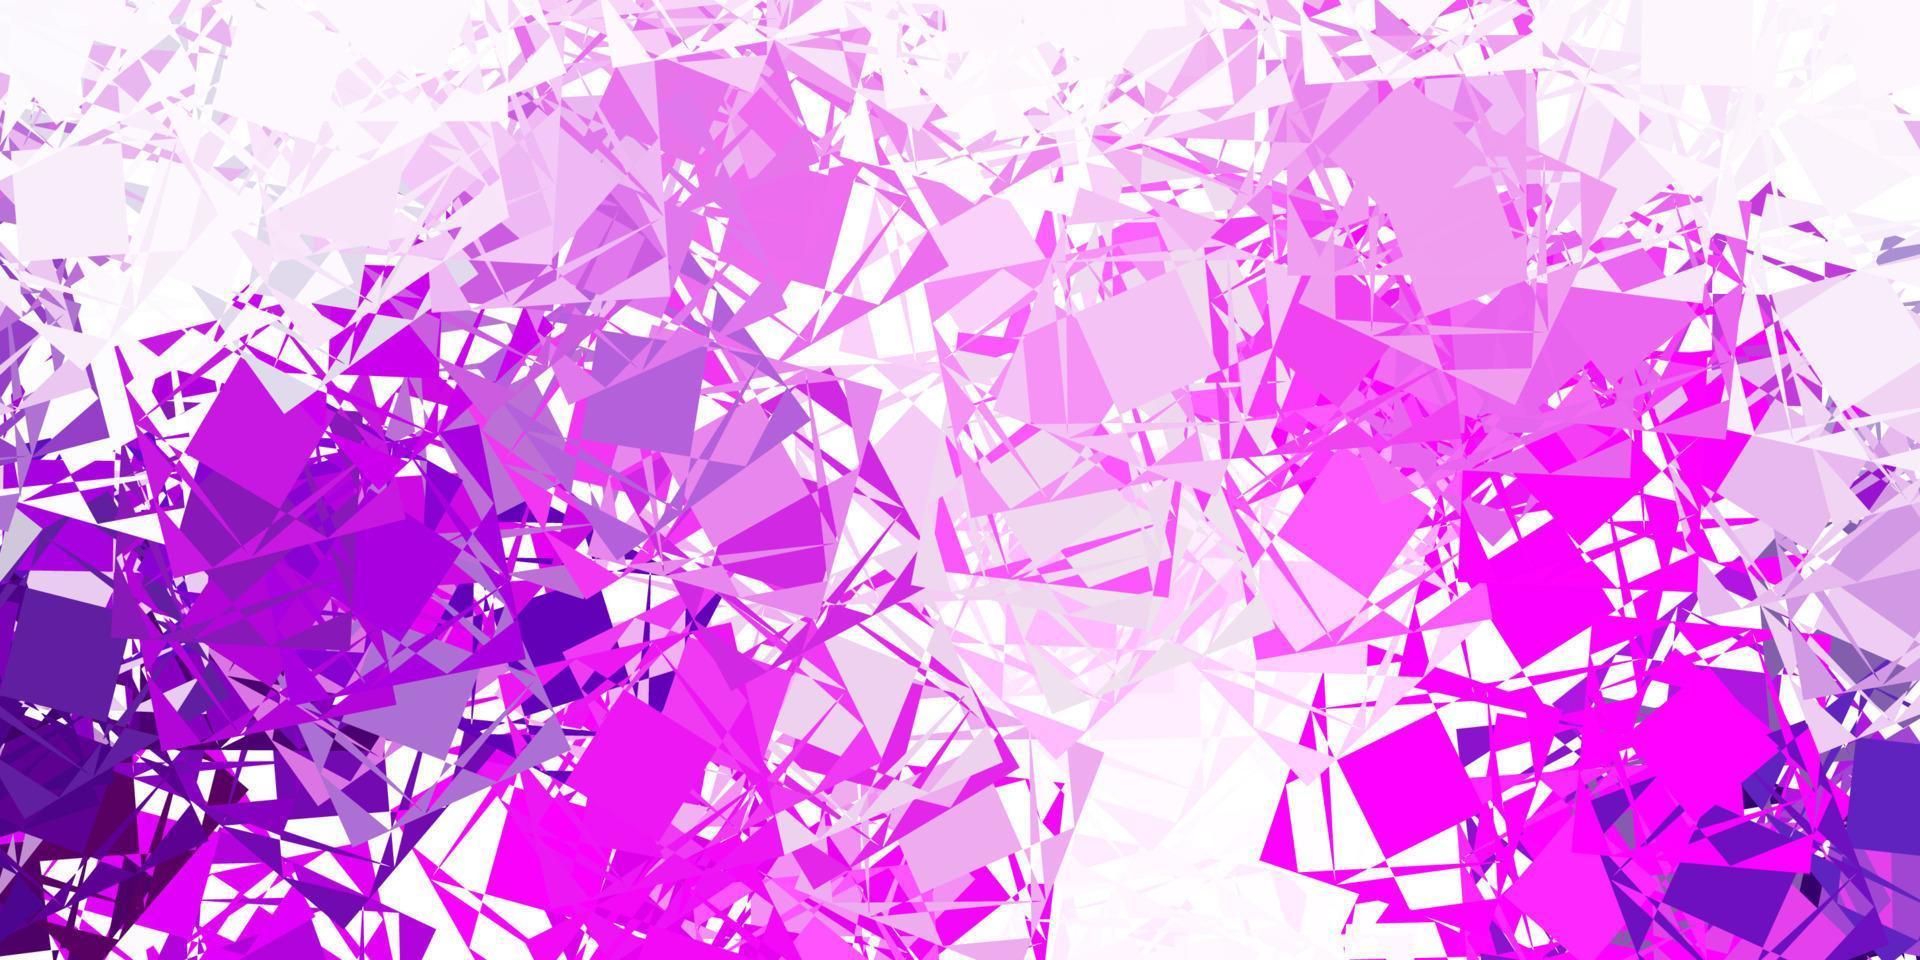 textura de vetor rosa claro com triângulos aleatórios.